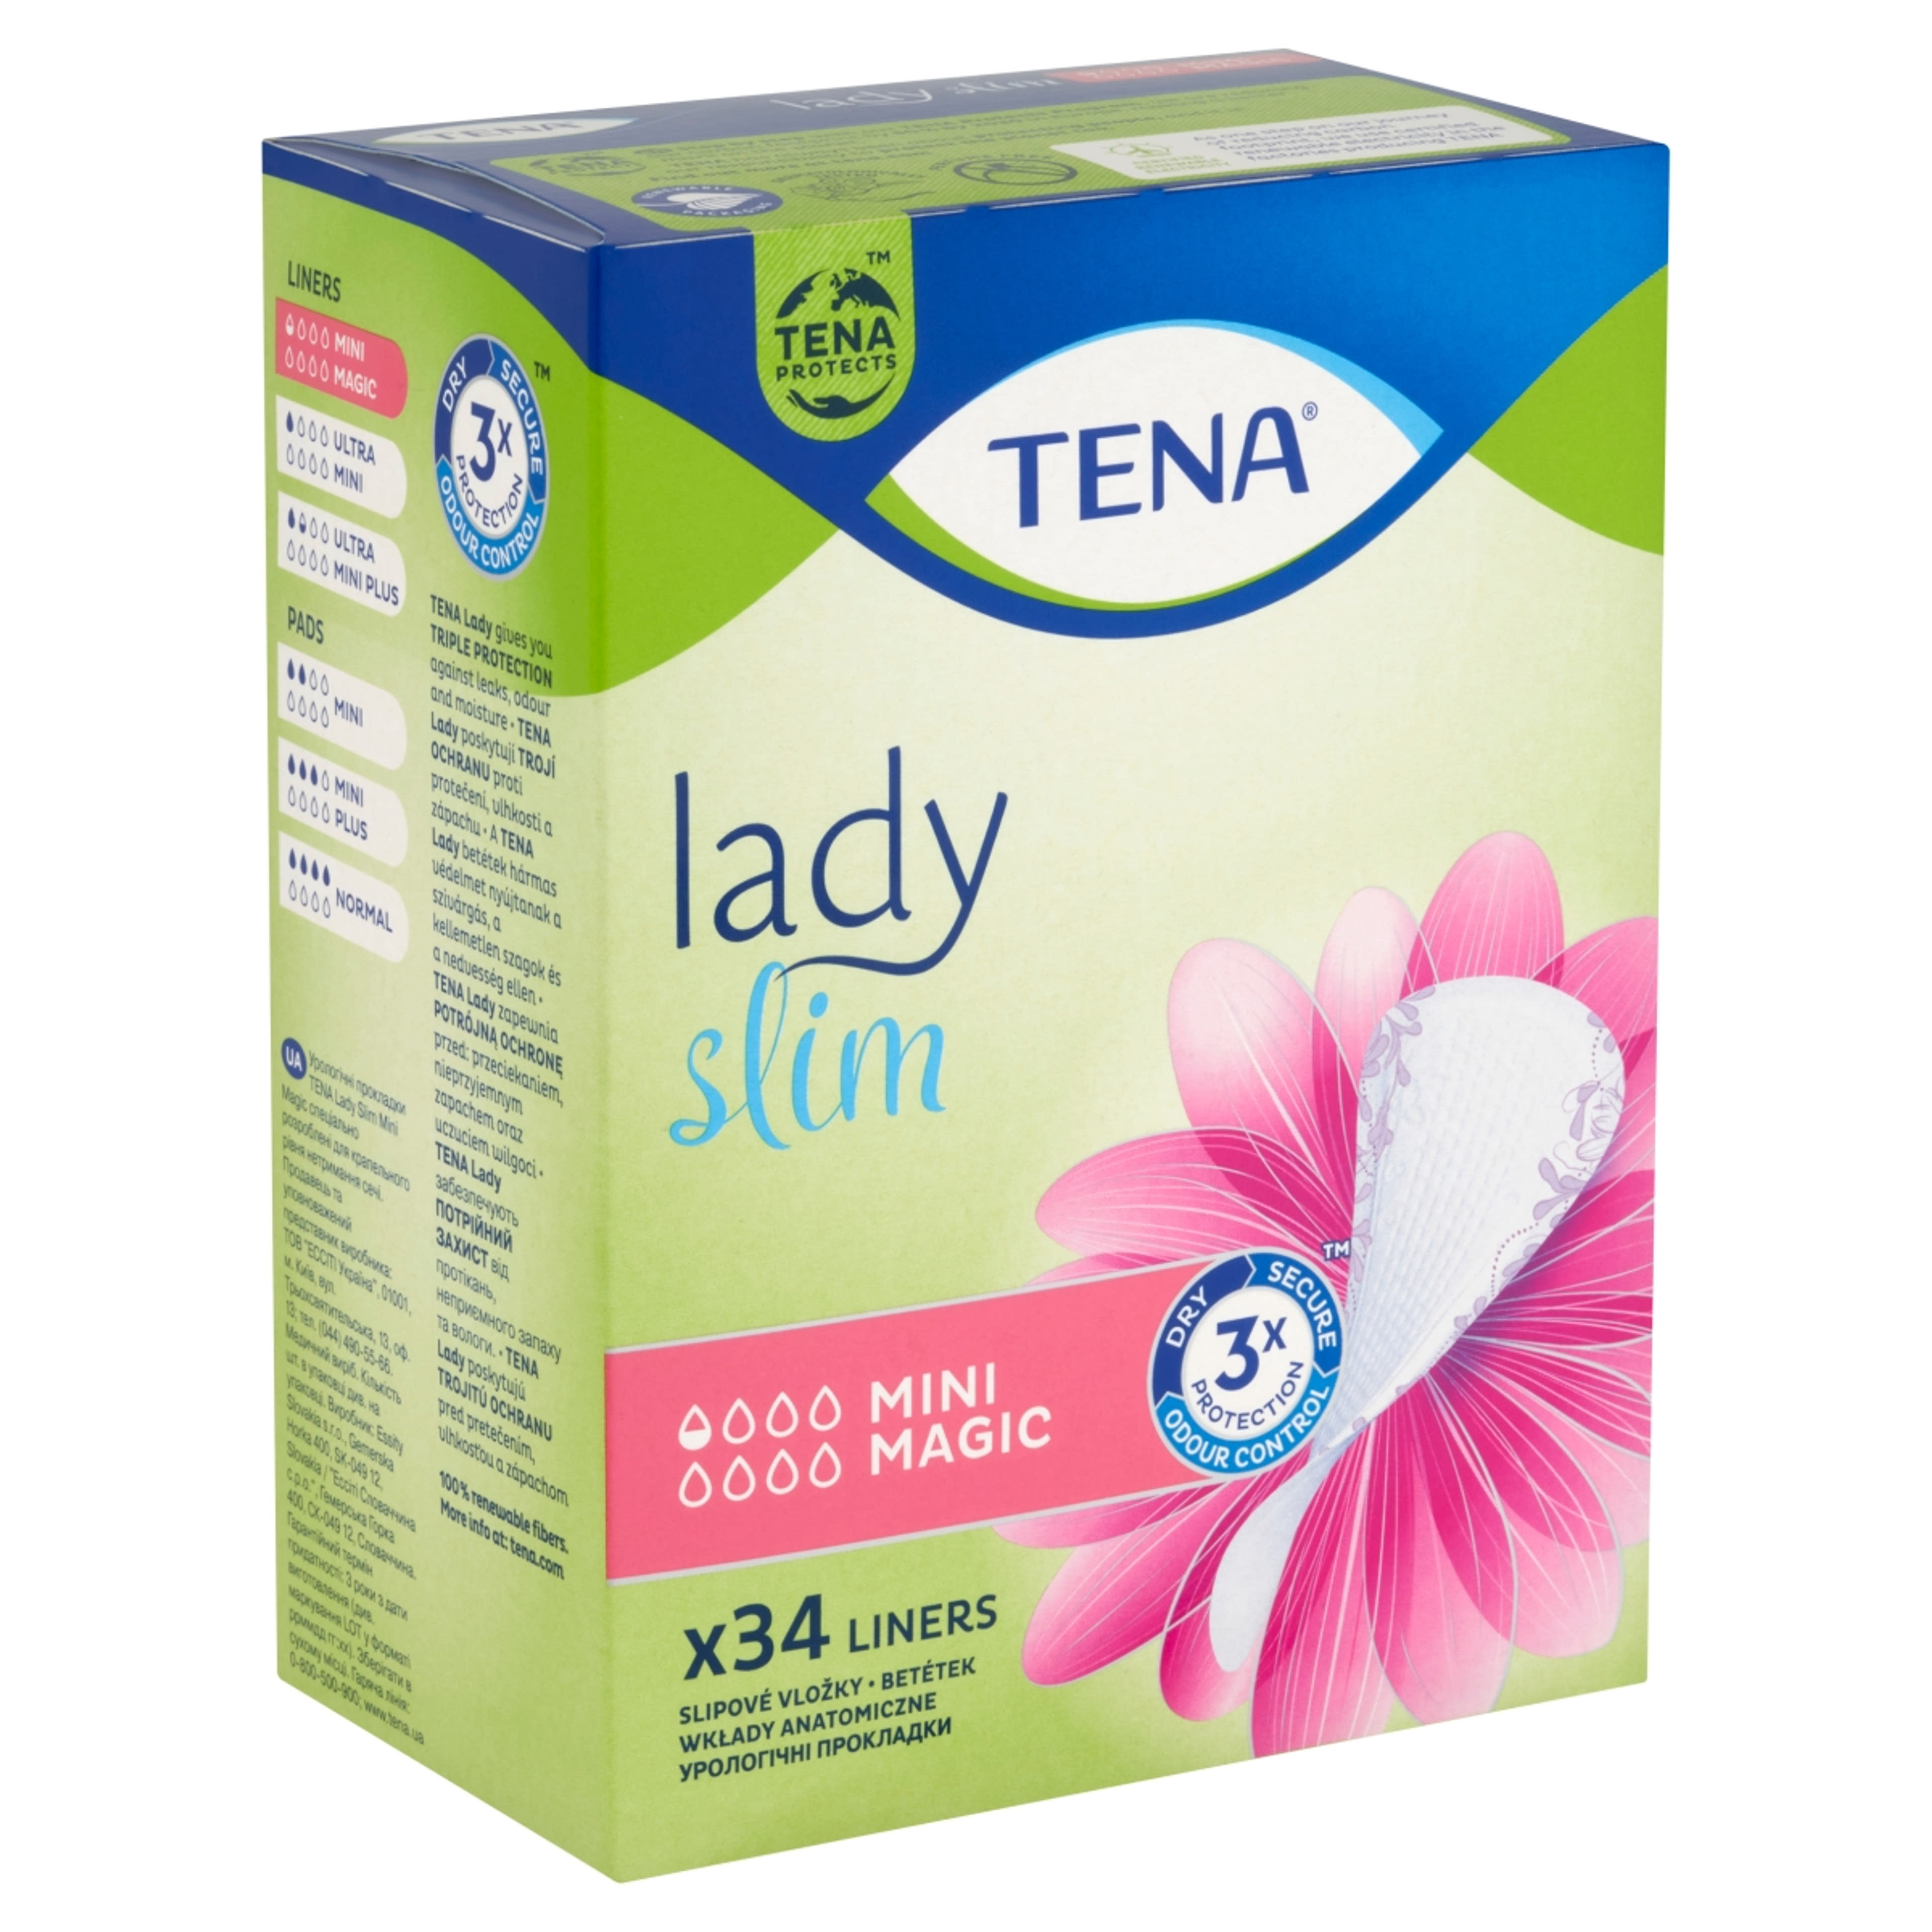 Tena lady inkontinencia betét mini magic - 34 db-2